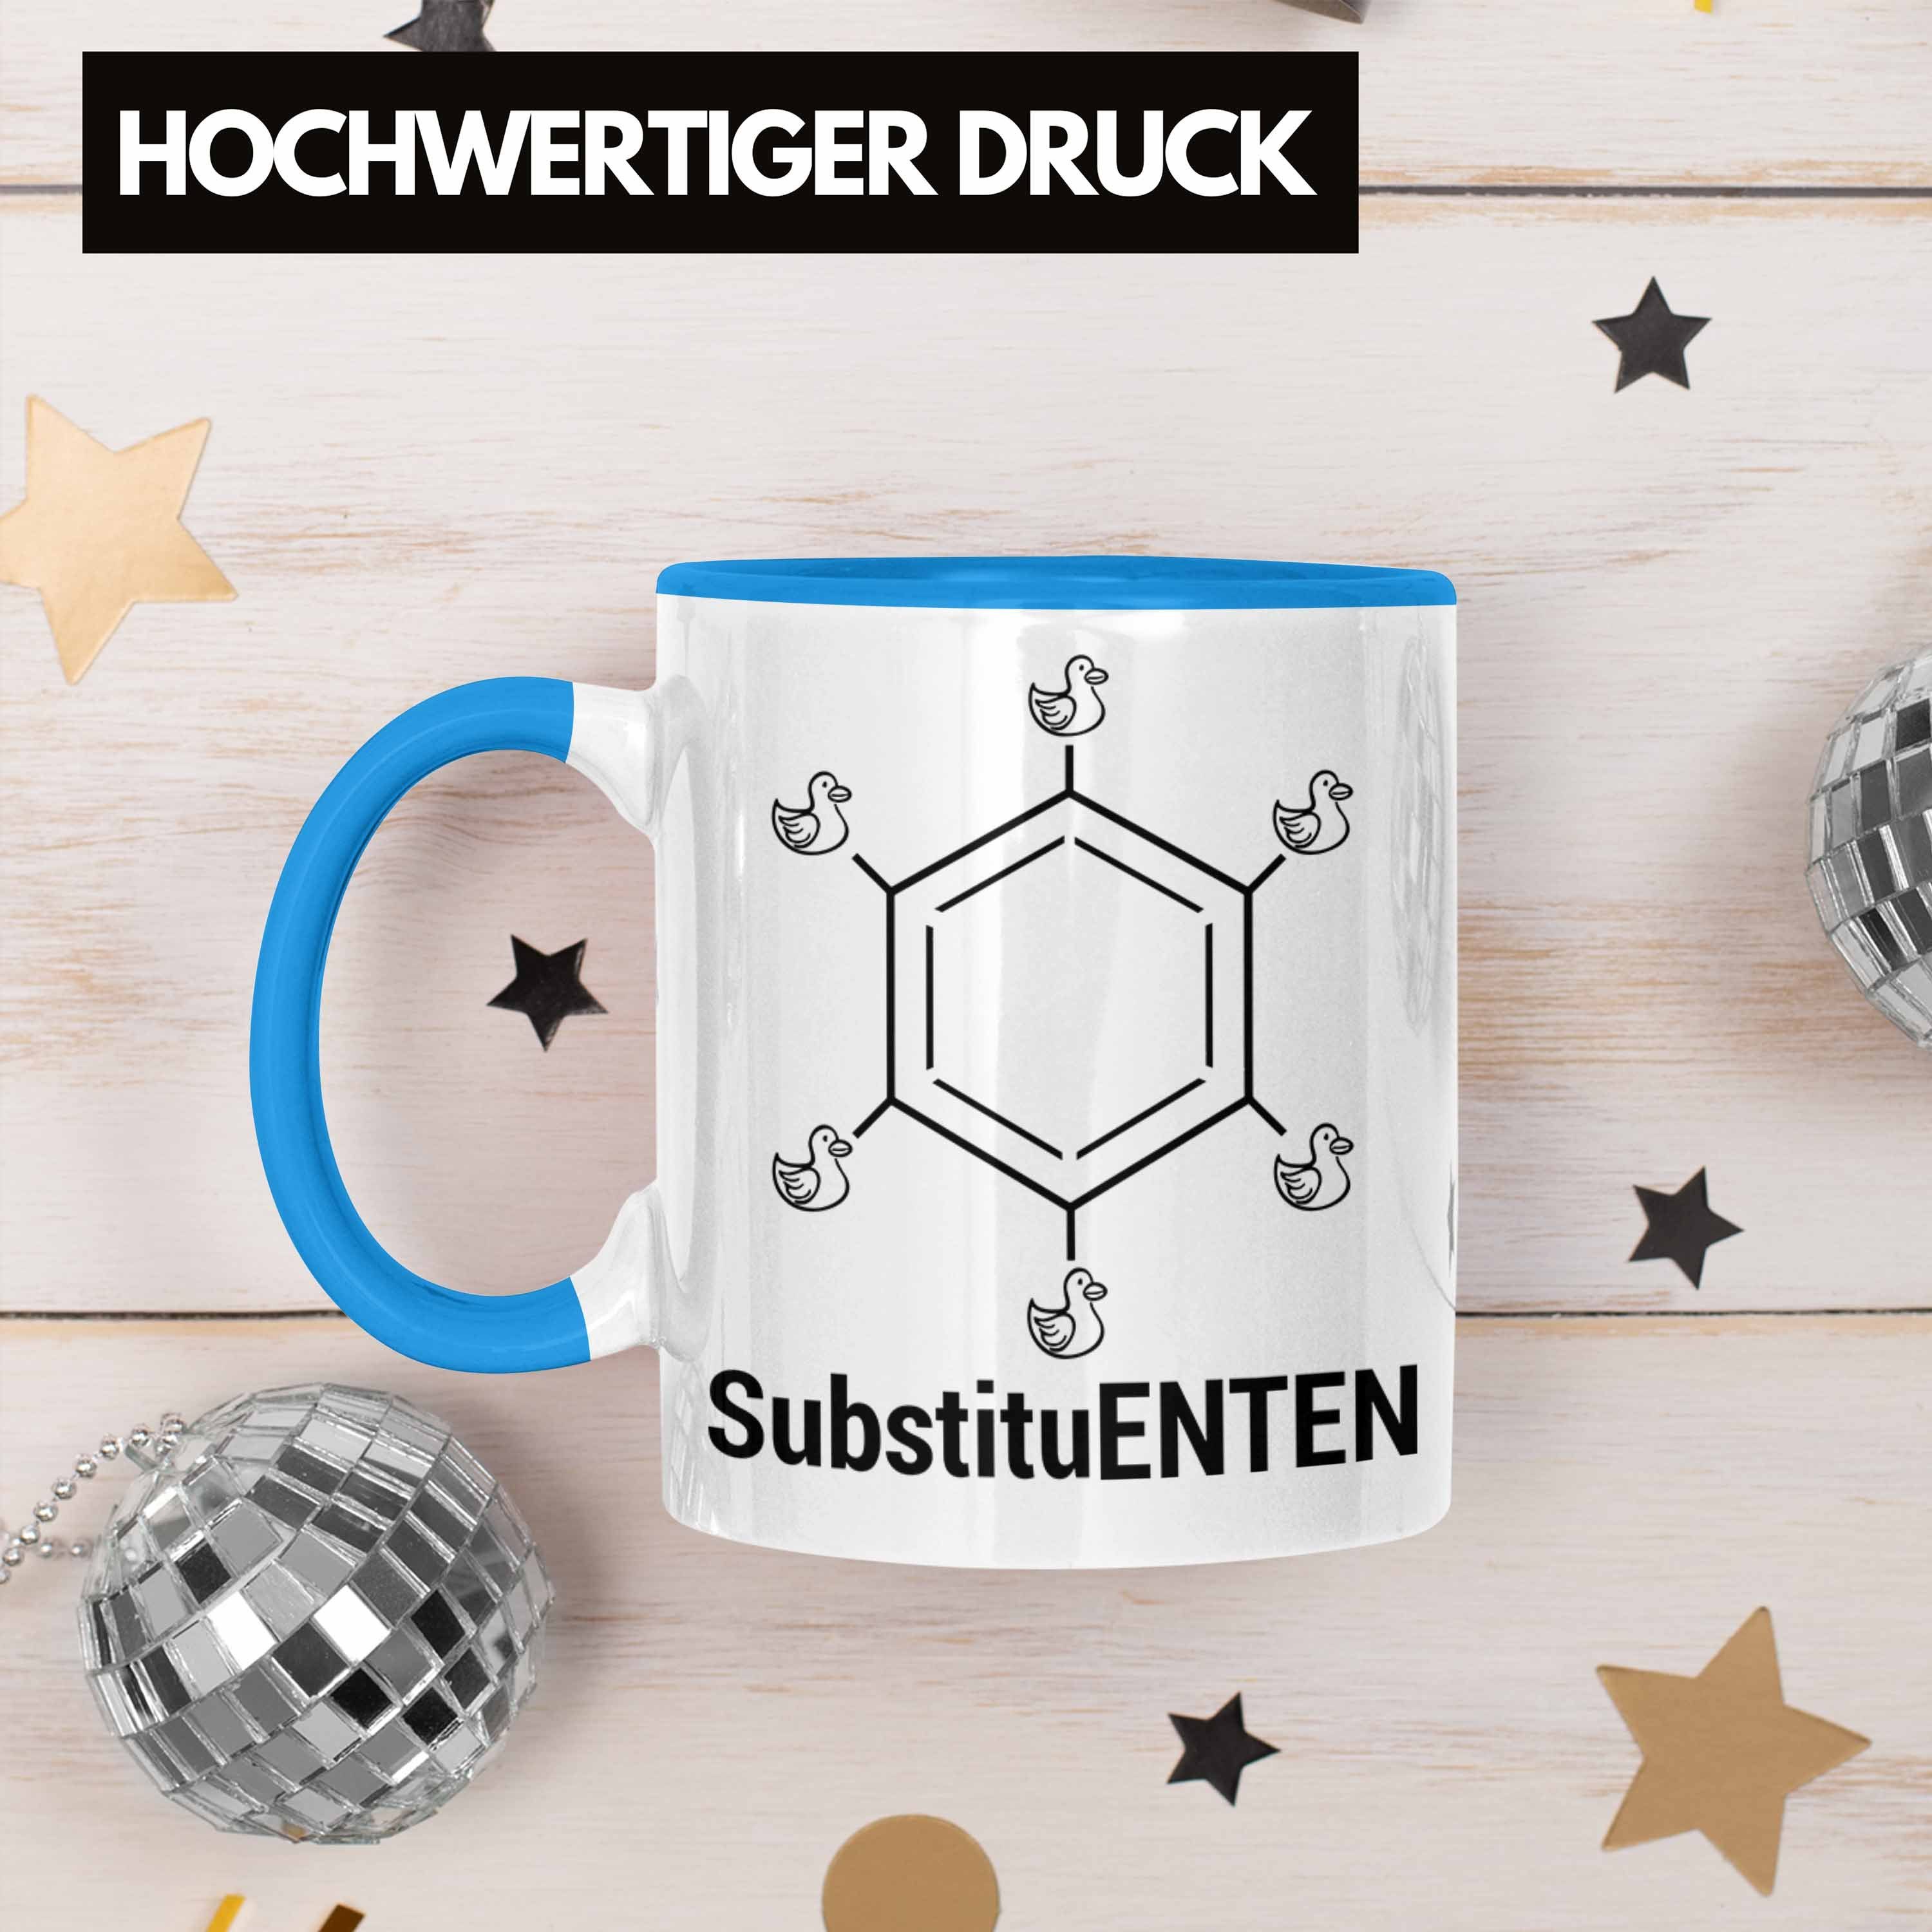 Organische Tasse Blau Ente Kaffee Tasse Trendation Chemiker SubstituENTEN Chemie Chemie Witz